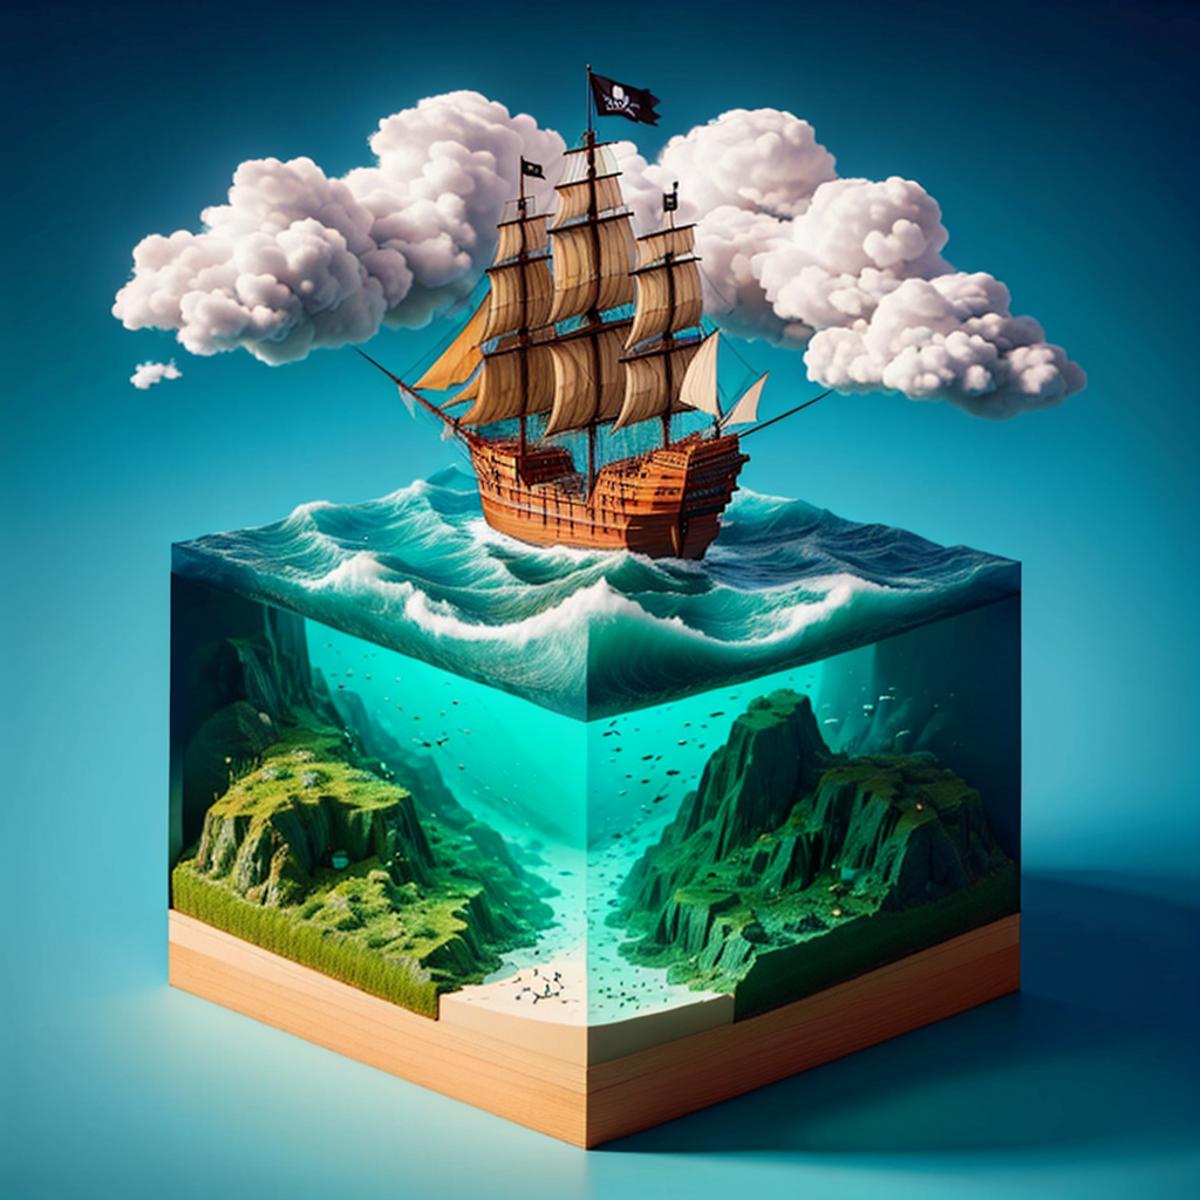 Water Cube image by norfleetzzc